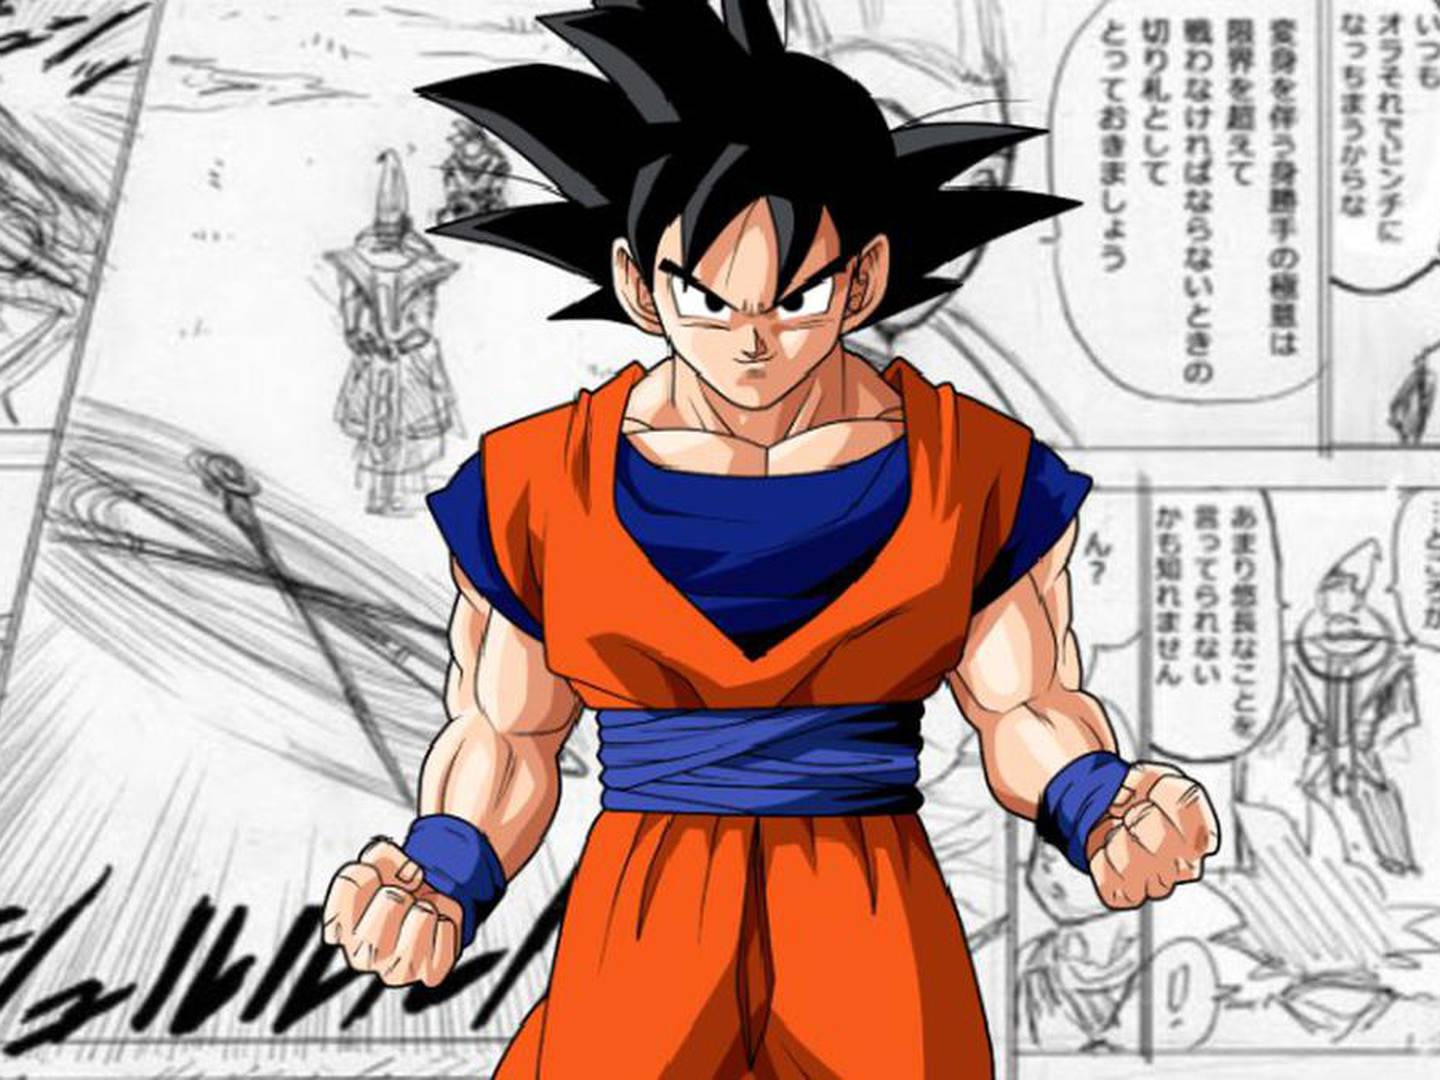 Dragon Ball  Site oficial revela planos para Dia do Goku